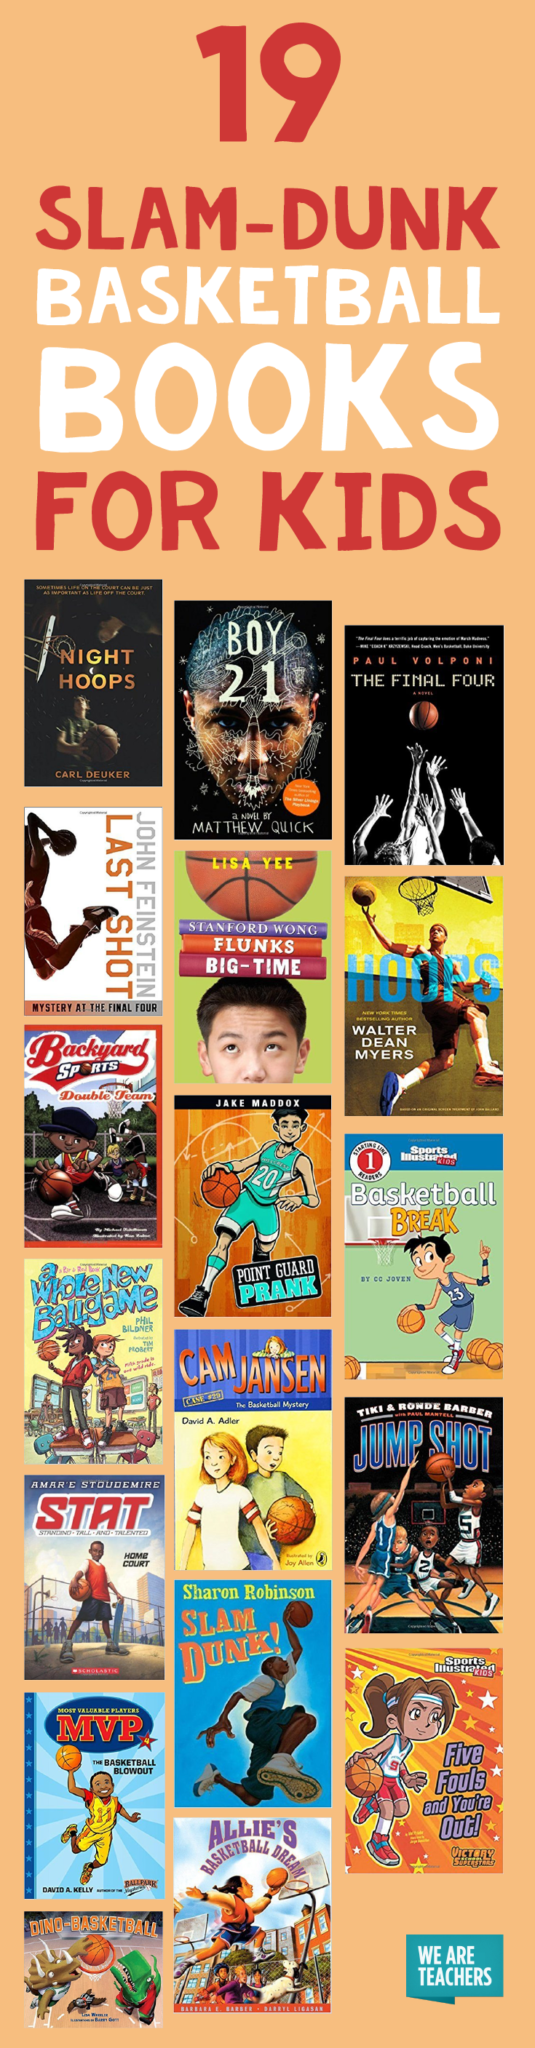 19 slam-dunk basketball books for kids